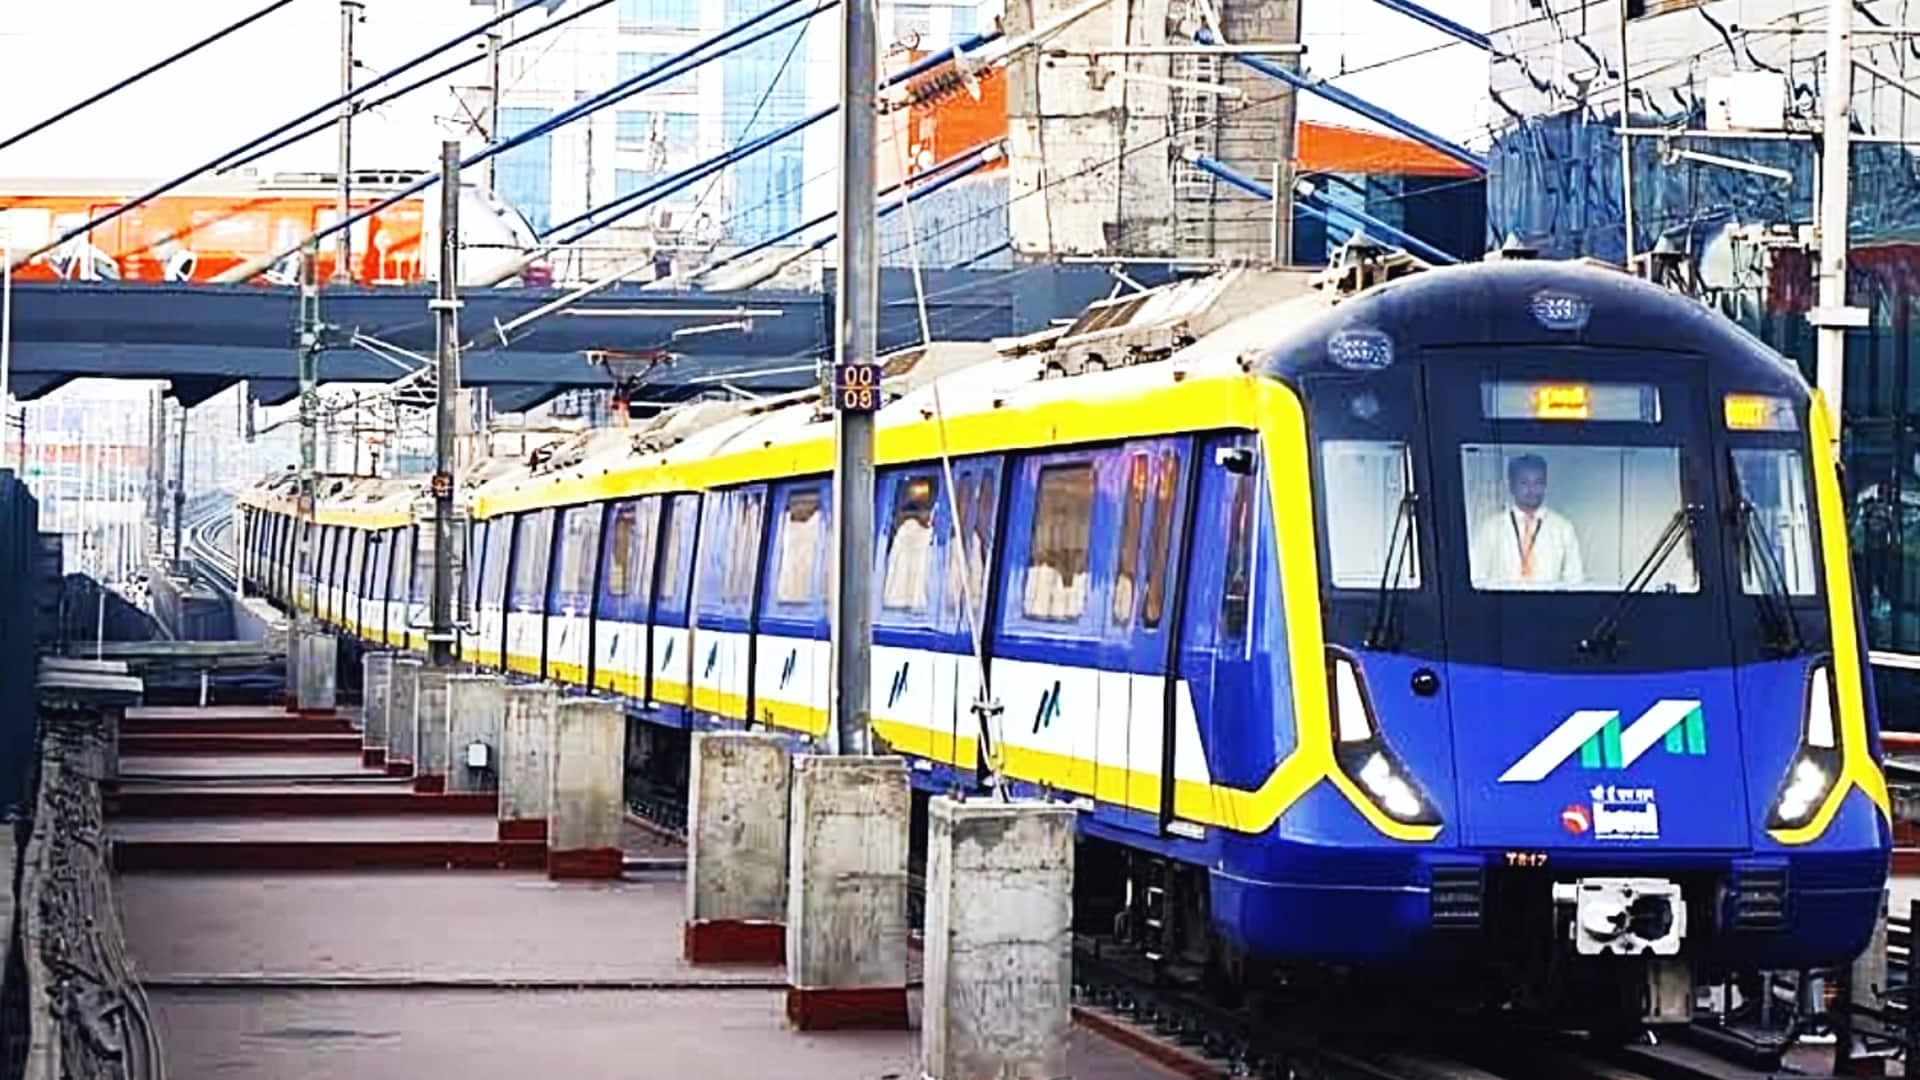 महाराष्ट्र: मतदान करने वालों के लिए मुंबई मेट्रो का ऐलान, यात्रा करने पर मिलेगी छूट